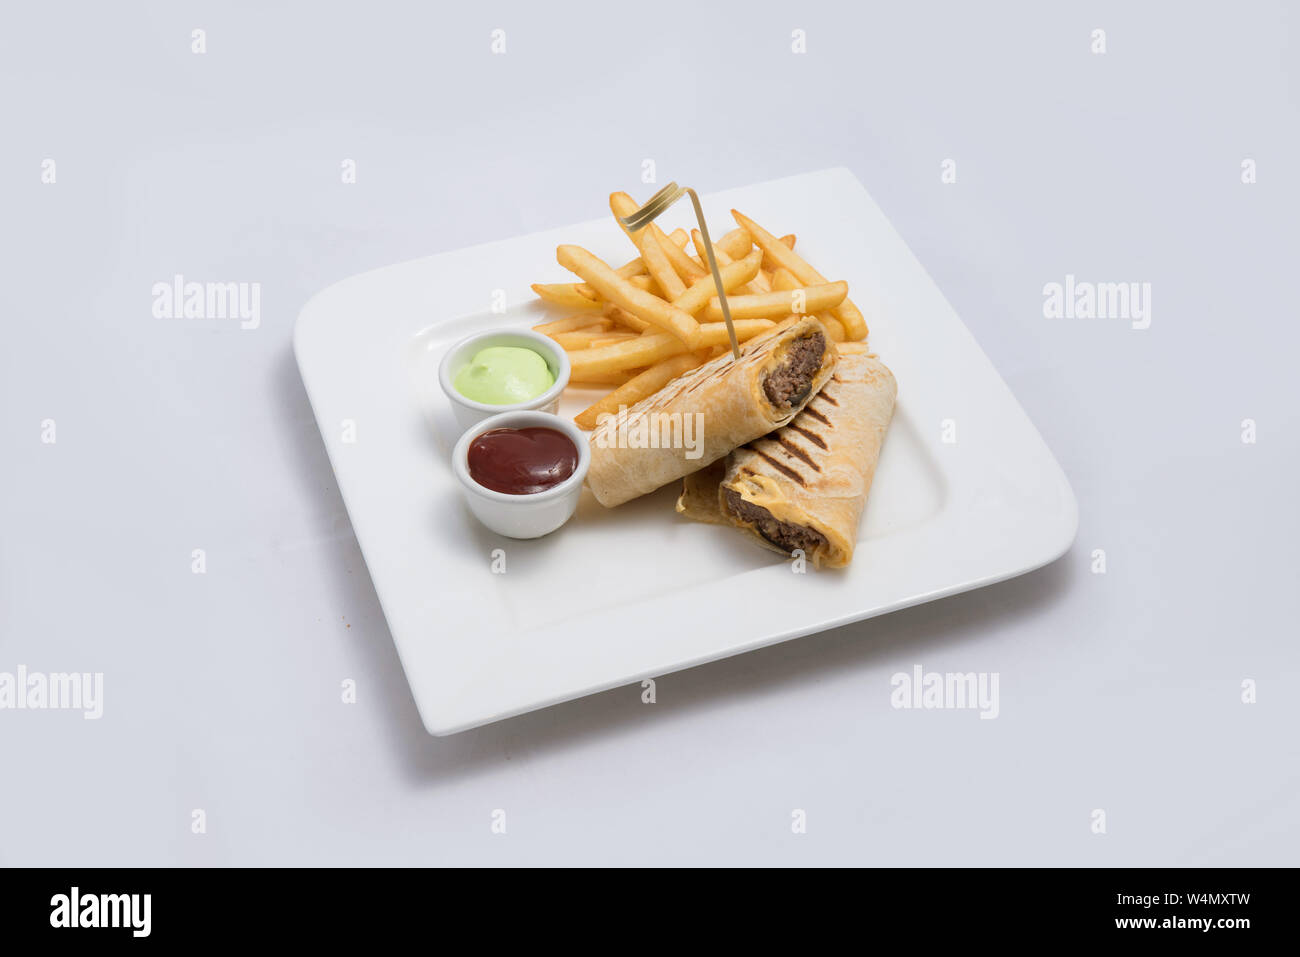 Einen niedrigen Kontrast hero Schuß eines Beef wrap Sandwich mit Samurai & alger Sauce und Pommes frites auf der Seite, auf einer minimalen weißen Hintergrund mit einem 45 Grad angl Stockfoto